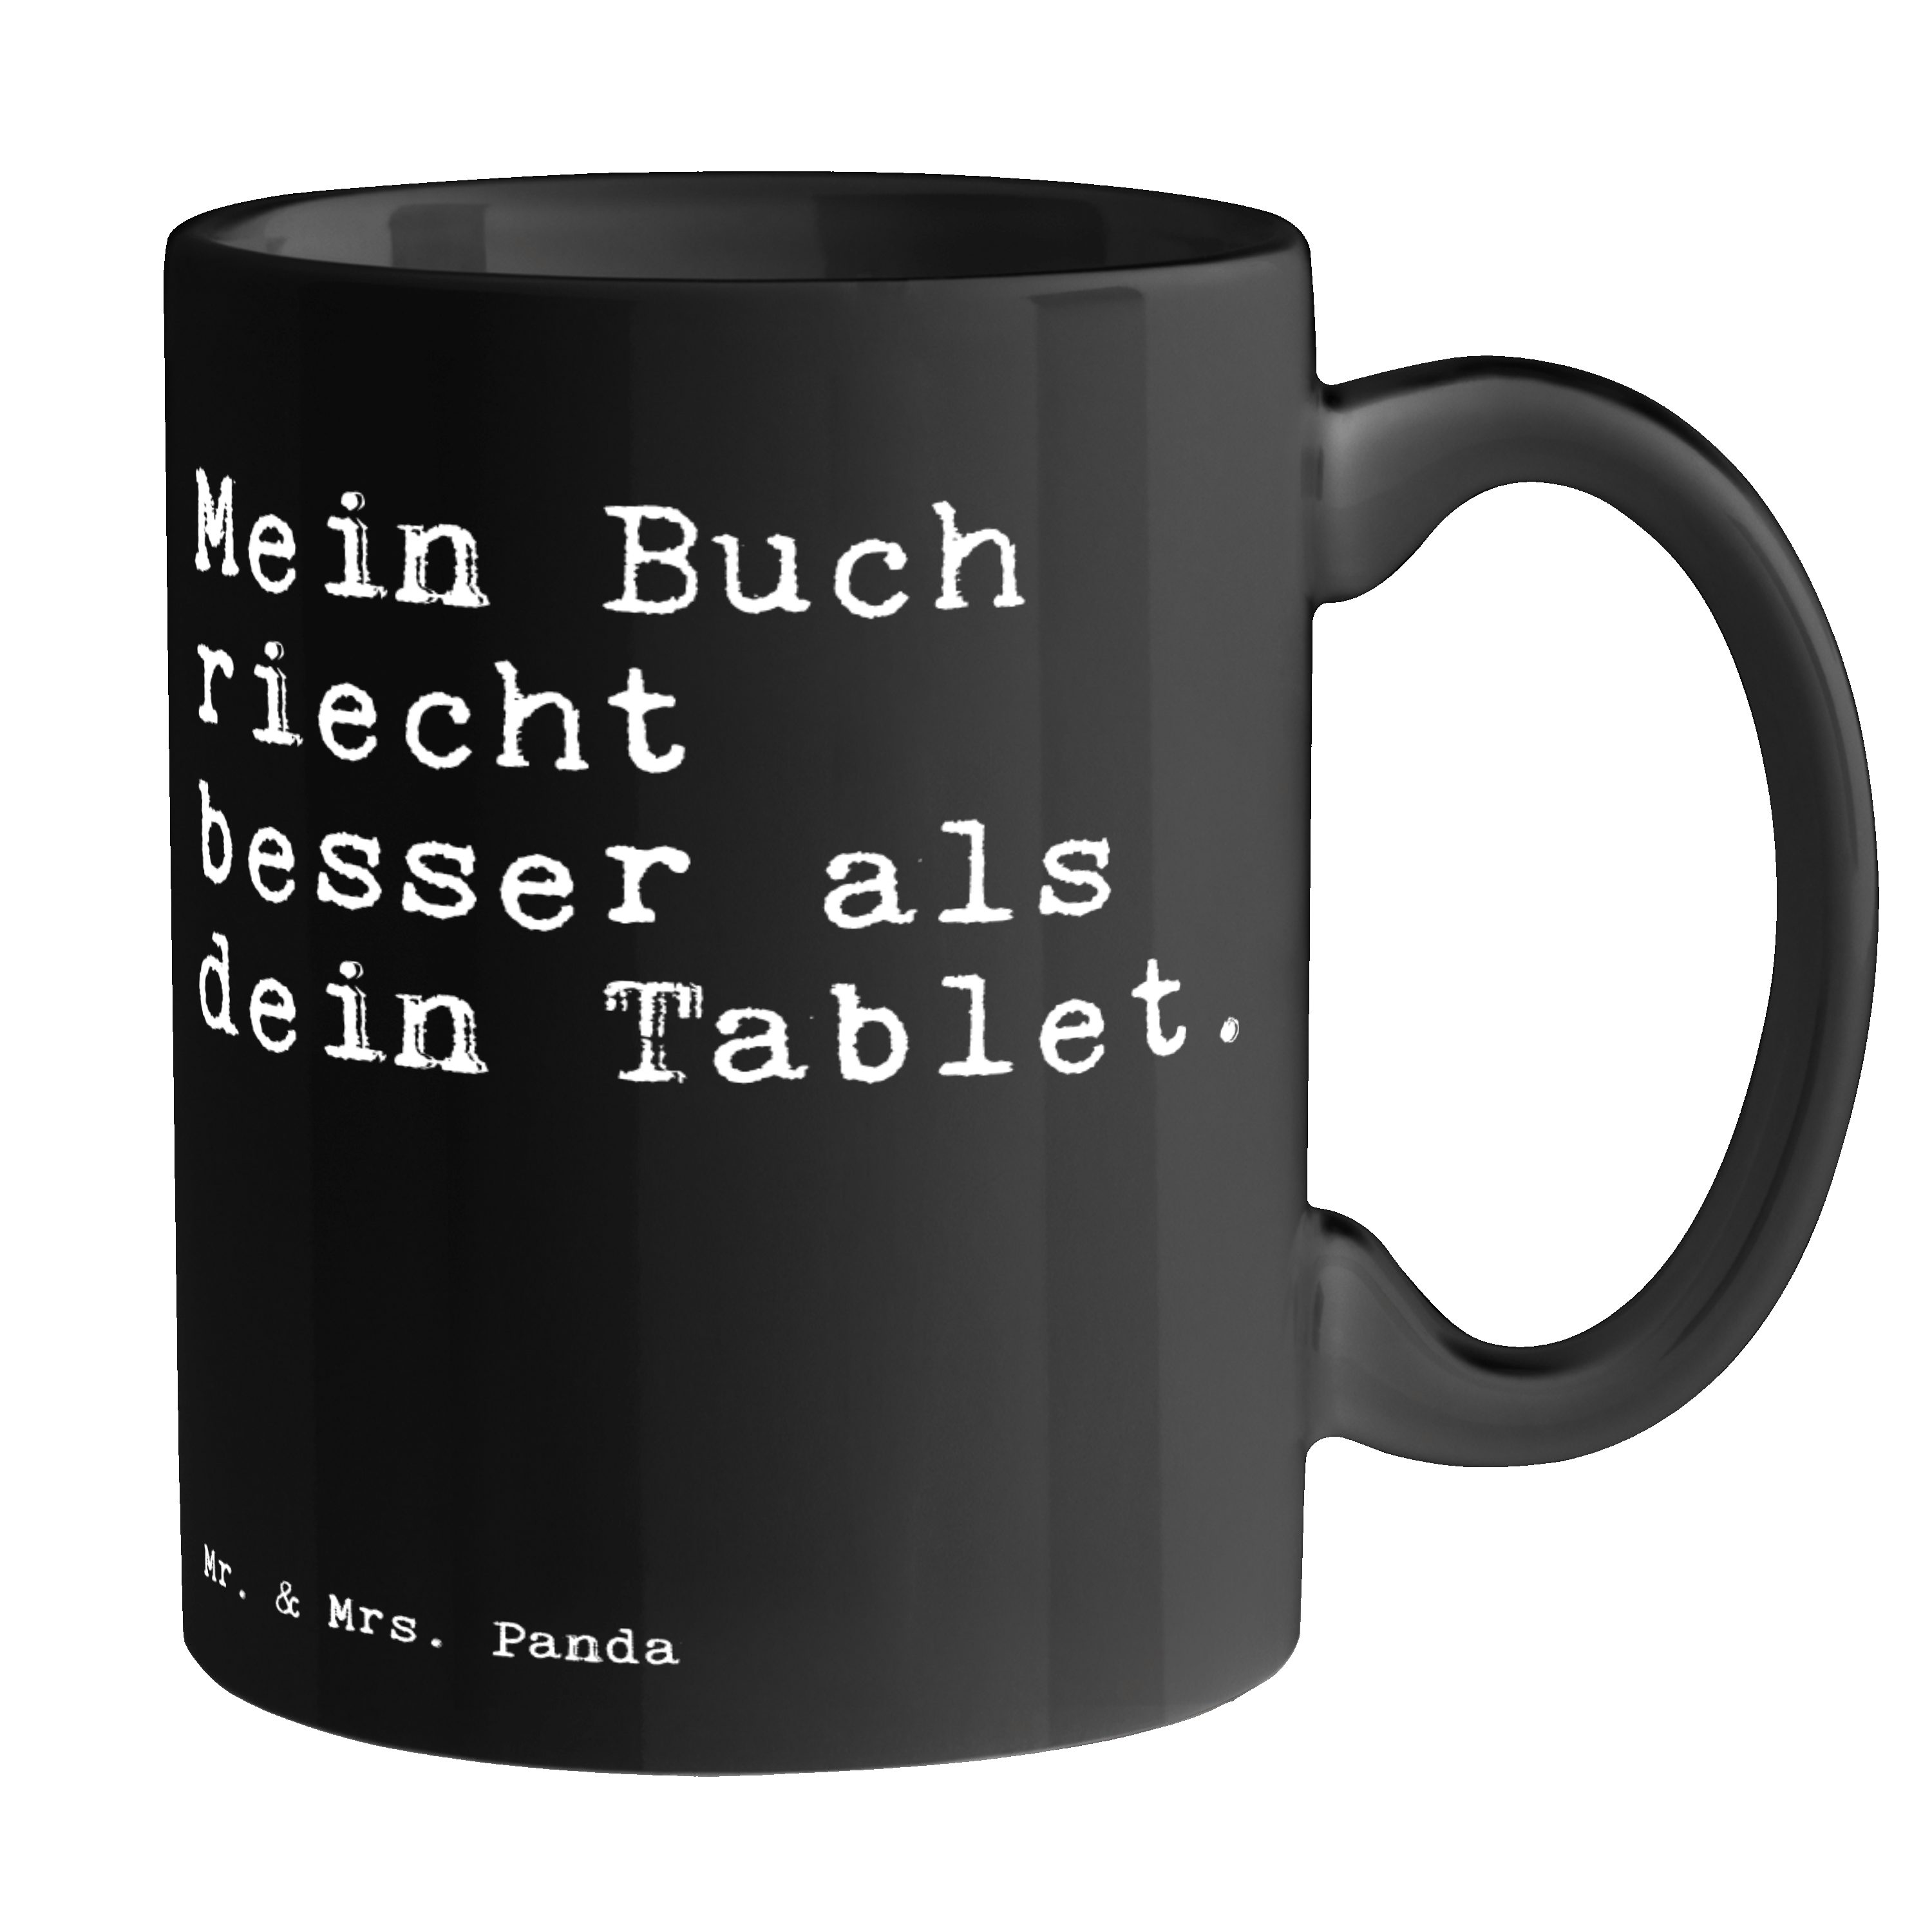 Mr. & Mrs. Panda Tasse Mein Buch riecht besser... - Schwarz - Geschenk, Spruch, Becher, Tee, Keramik Schwarz